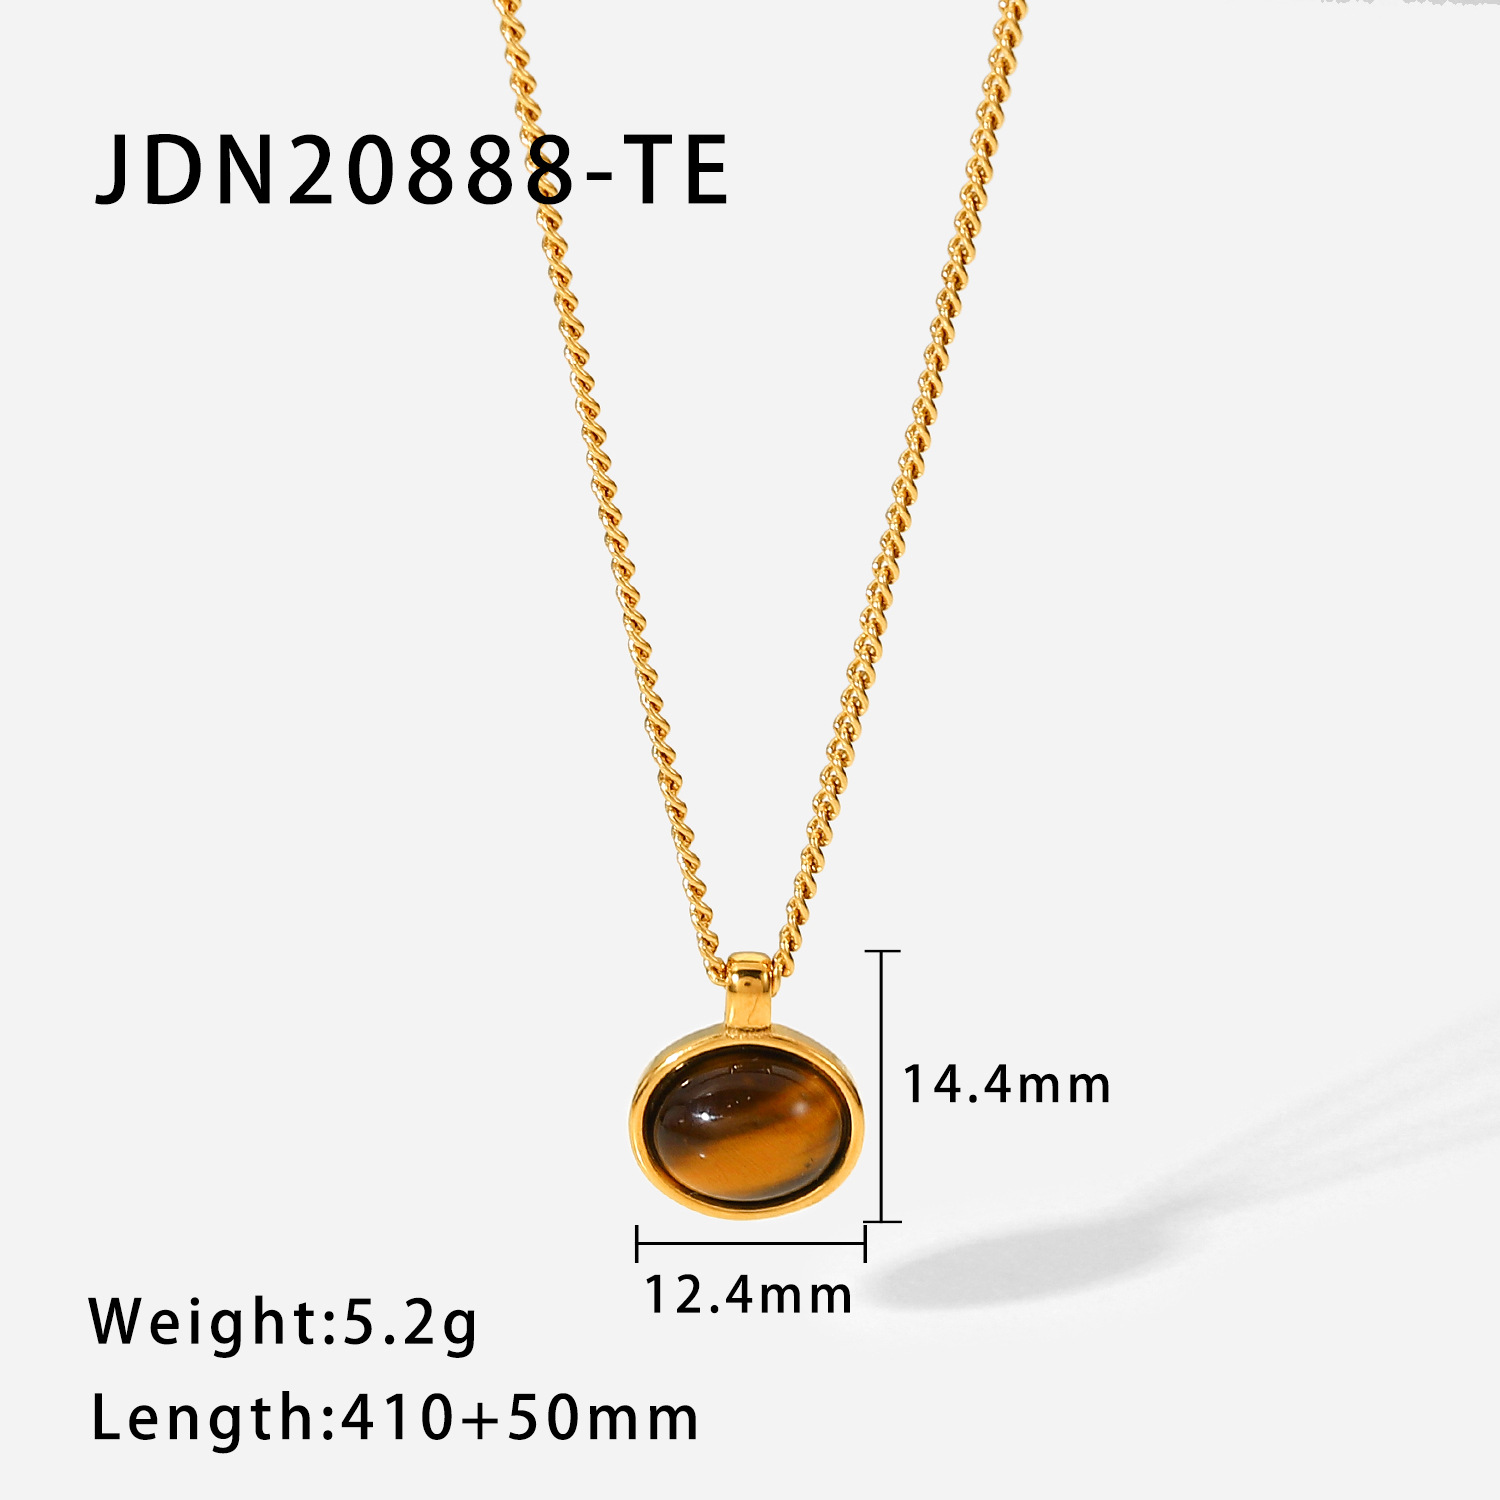 JDN20888-TE